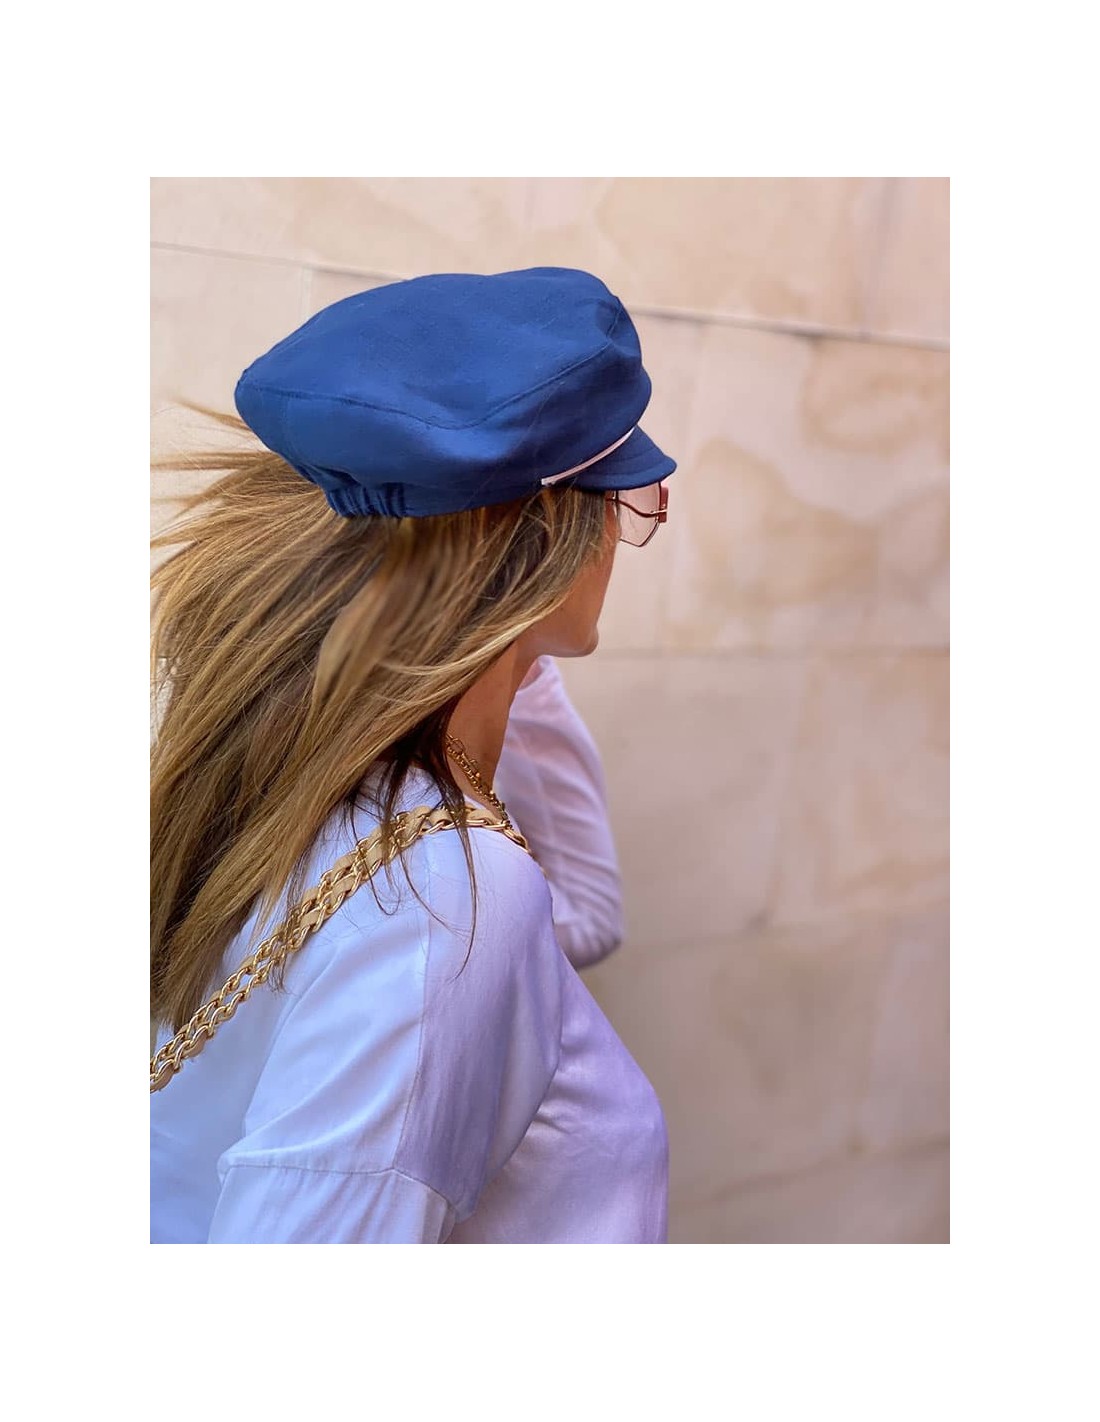 arena Cambiarse de ropa Frotar Comprar Gorro Pescador Mujer Azul Marino - Raceu Hats Online